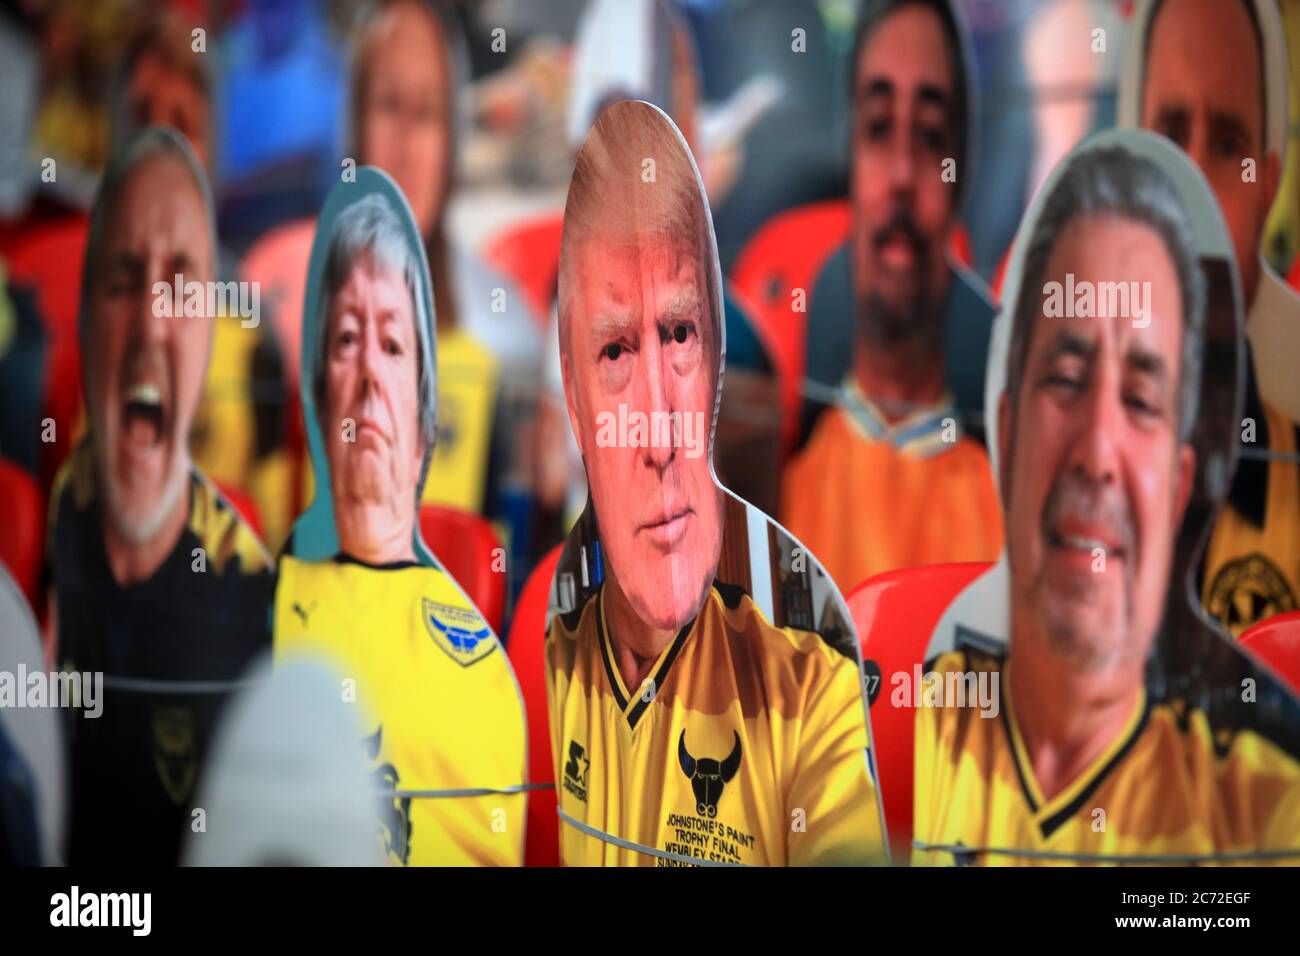 Una visione generale del taglio di cartone dei tifosi negli stand, tra cui Donald Trump prima della finale di gioco di Sky Bet League One al Wembley Stadium, Londra. Foto Stock